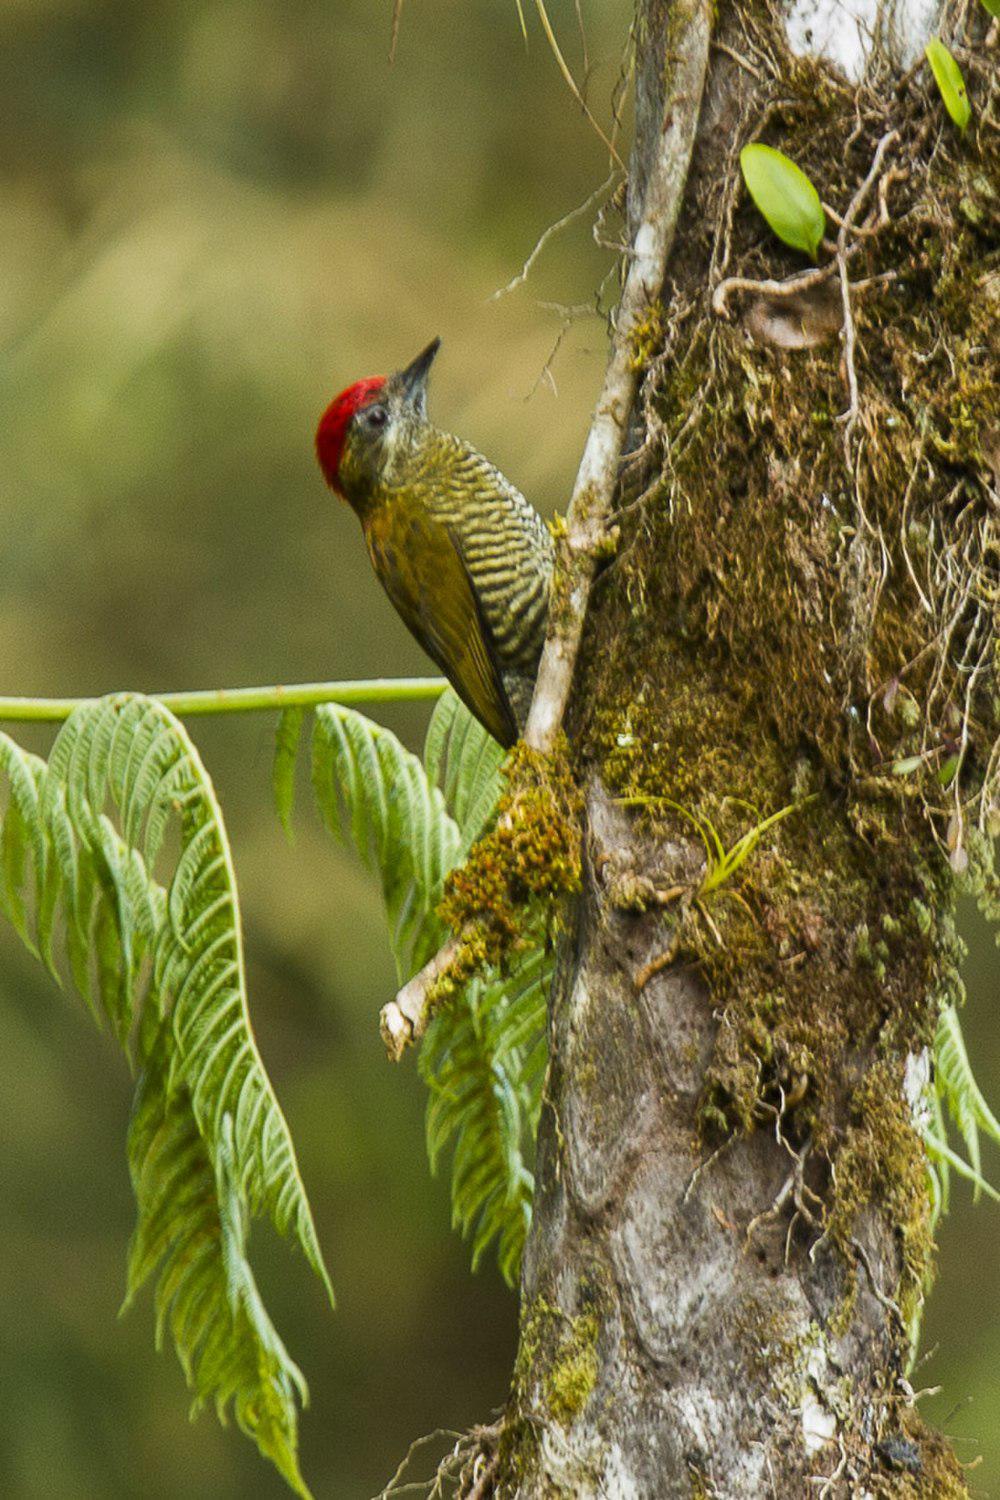 斑腹啄木鸟 / Bar-bellied Woodpecker / Veniliornis nigriceps